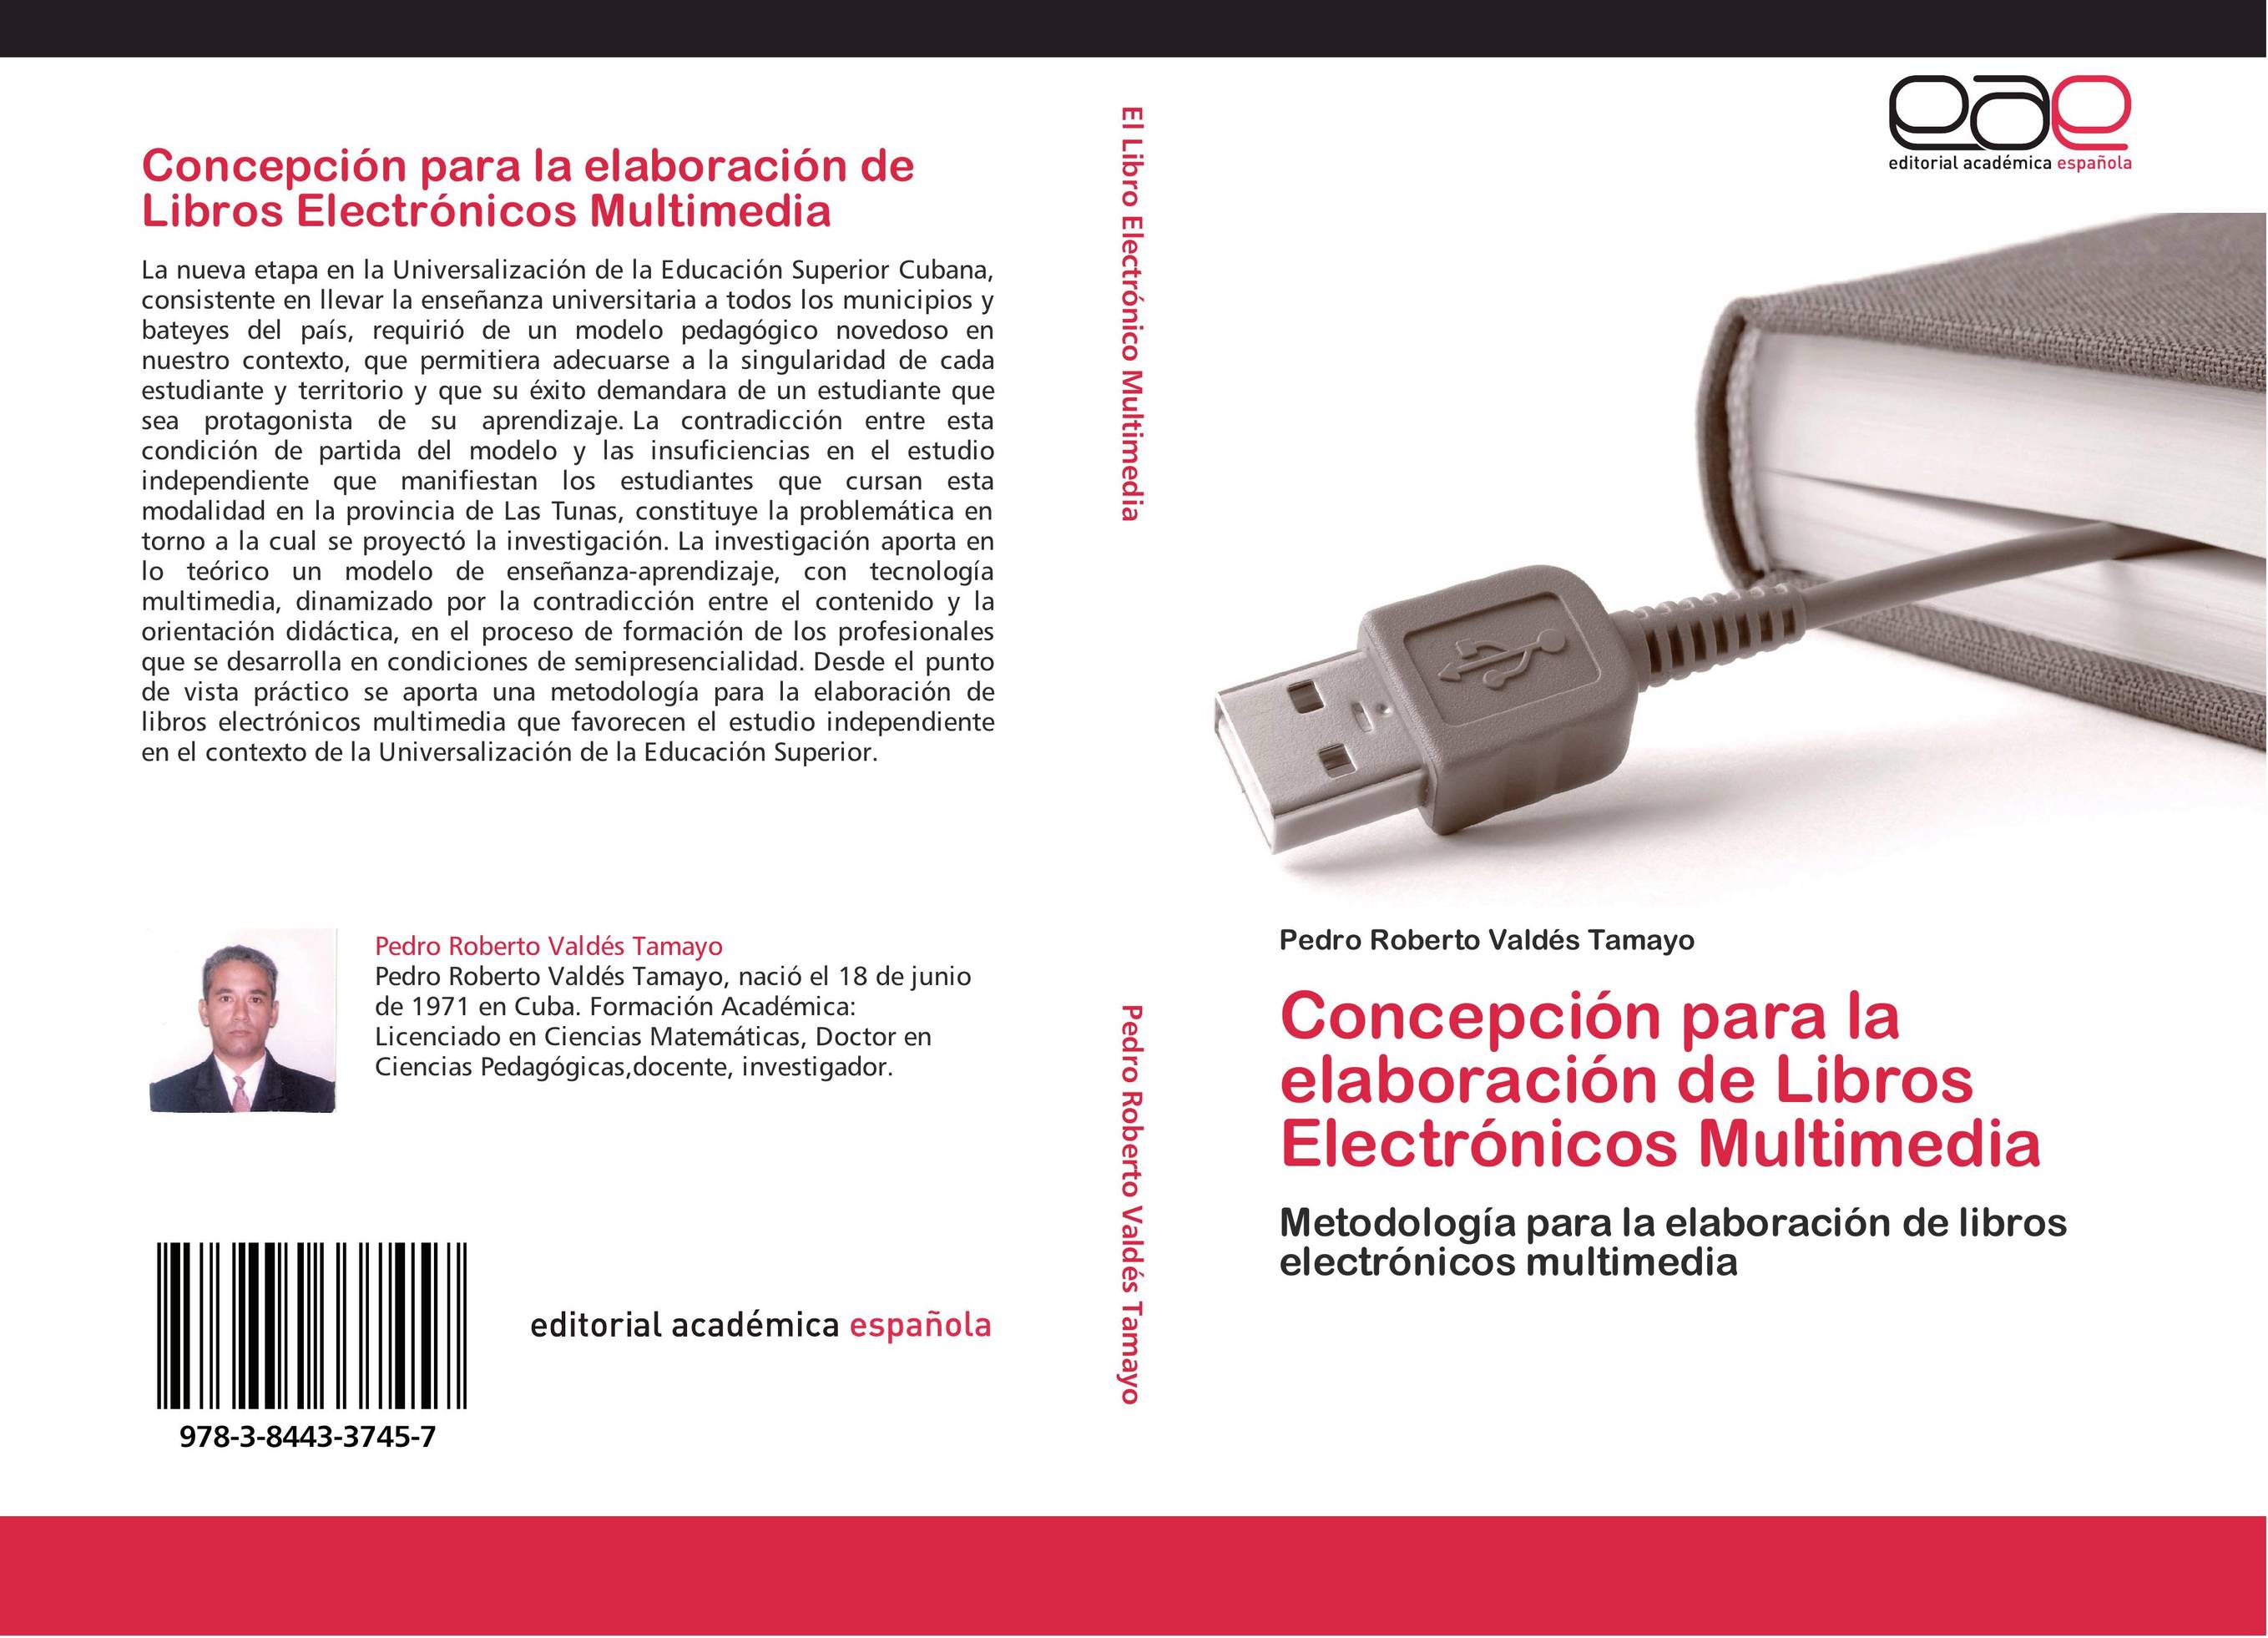 Concepción para la elaboración de Libros Electrónicos Multimedia